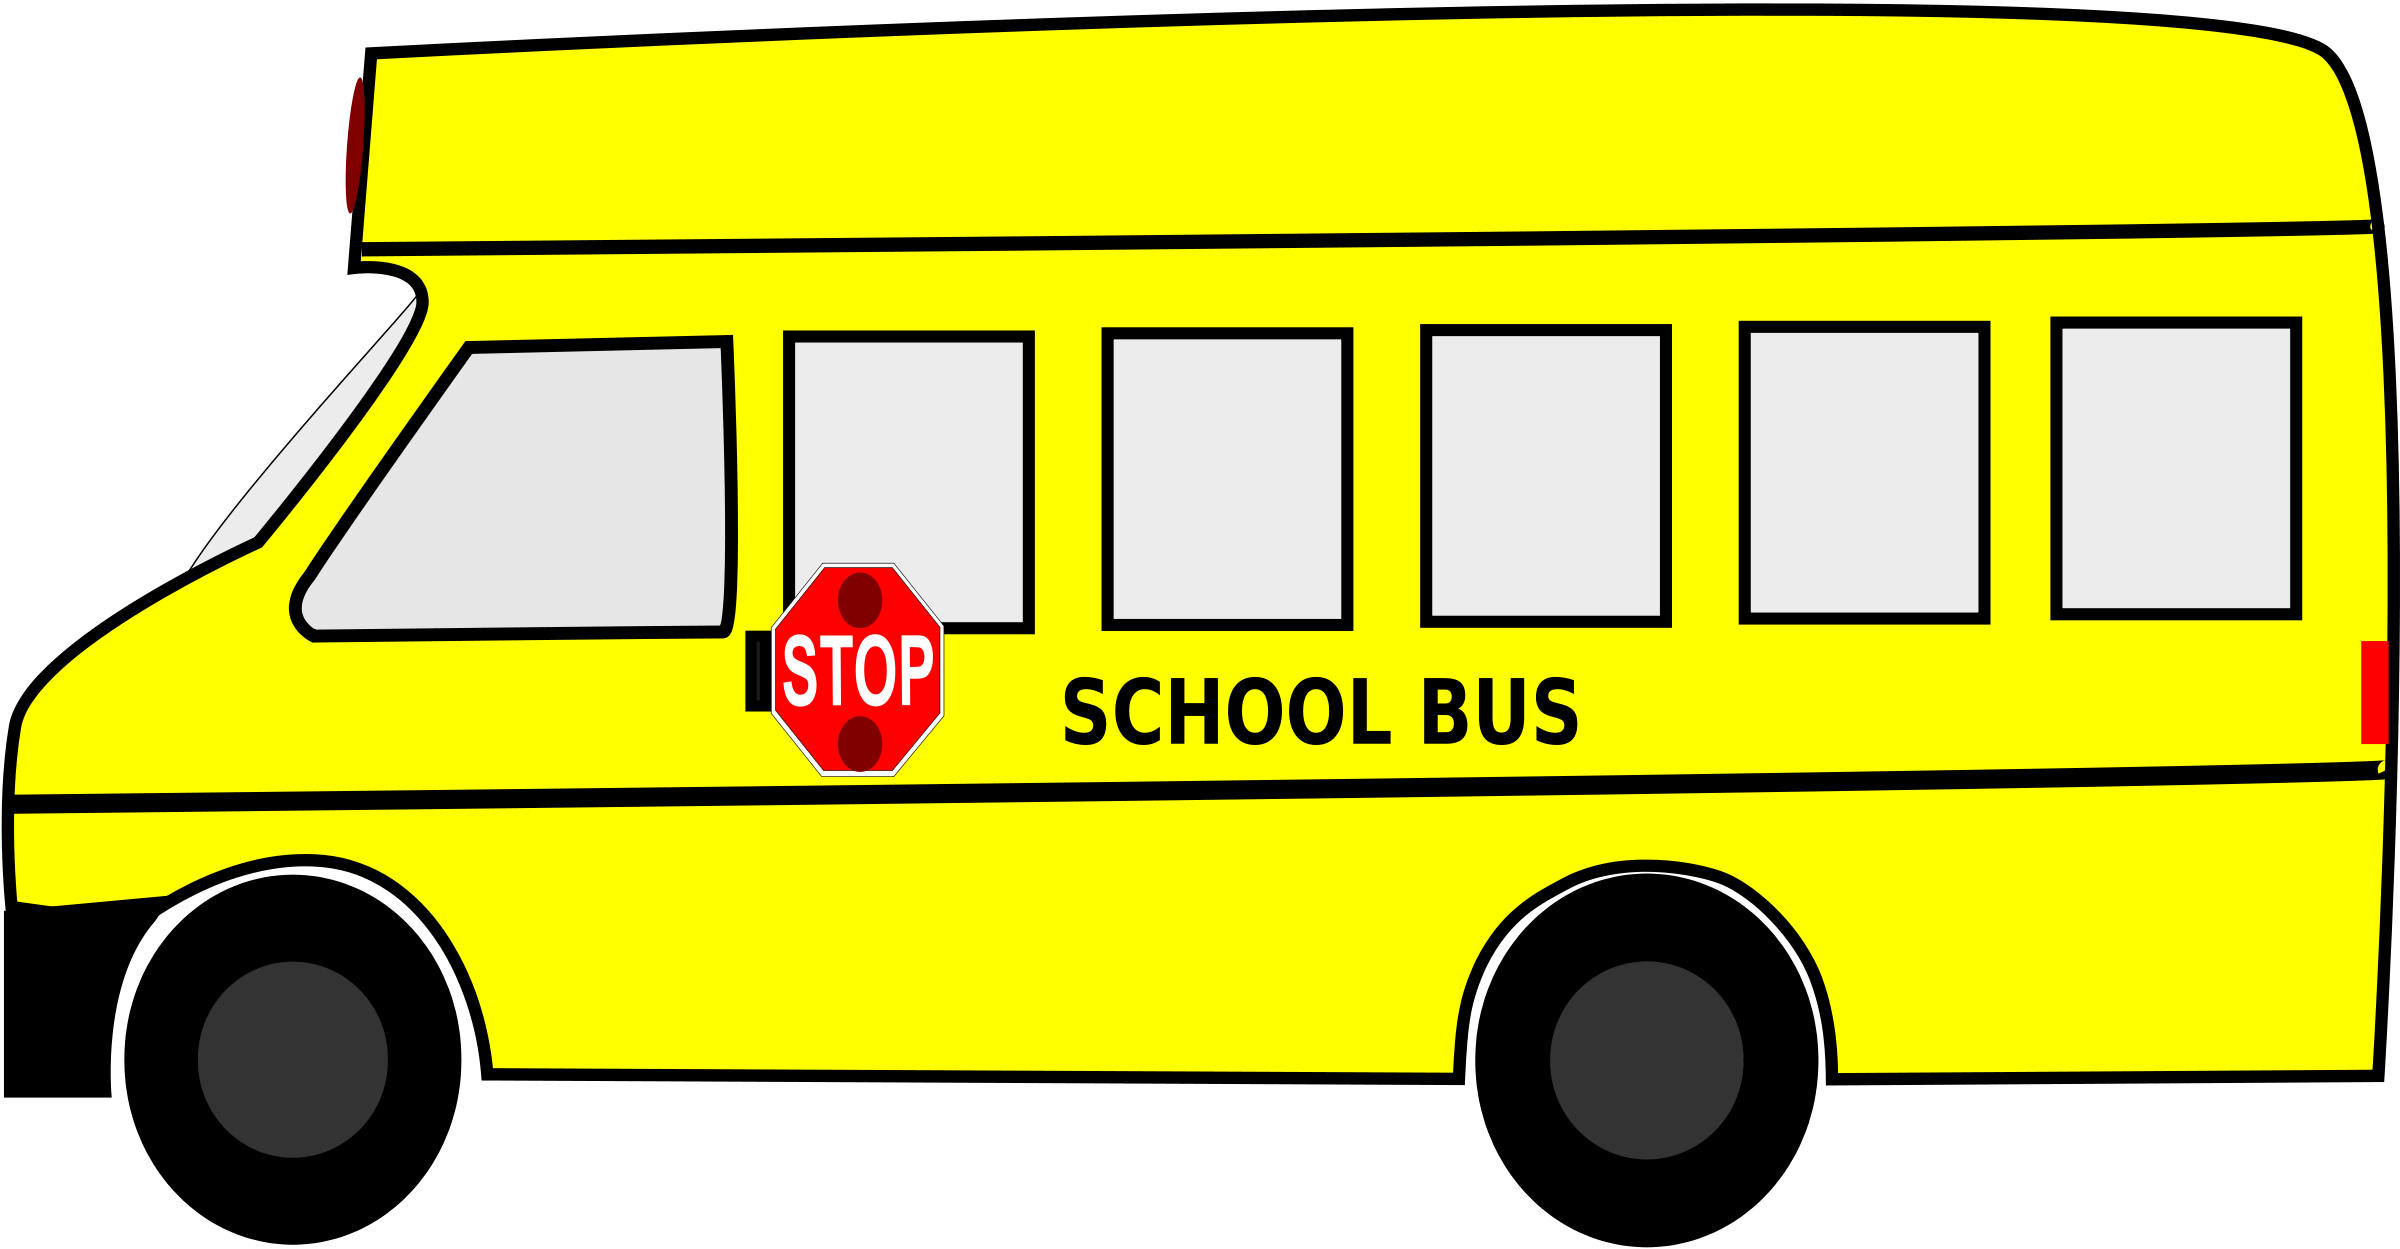 Bus Clip Art - School Bus Images Clip Art